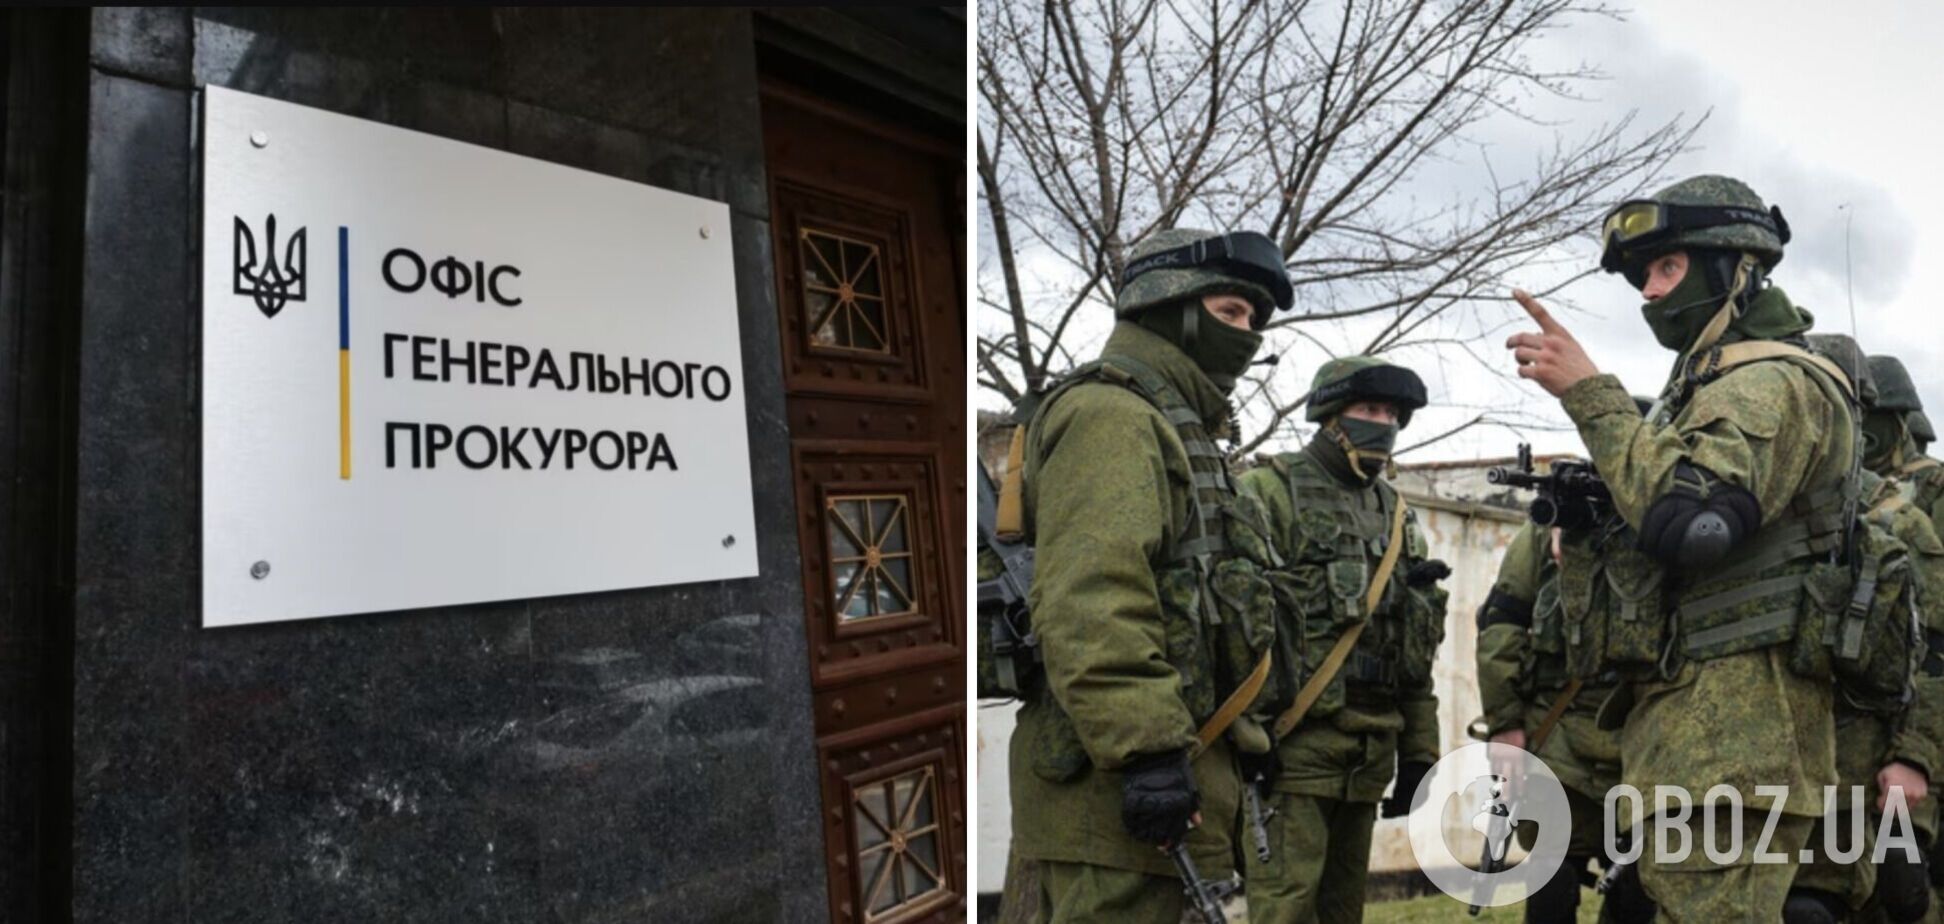 Офіс генпрокурора зареєстрував понад 75 тис. випадків воєнних злочинів РФ, – Костін